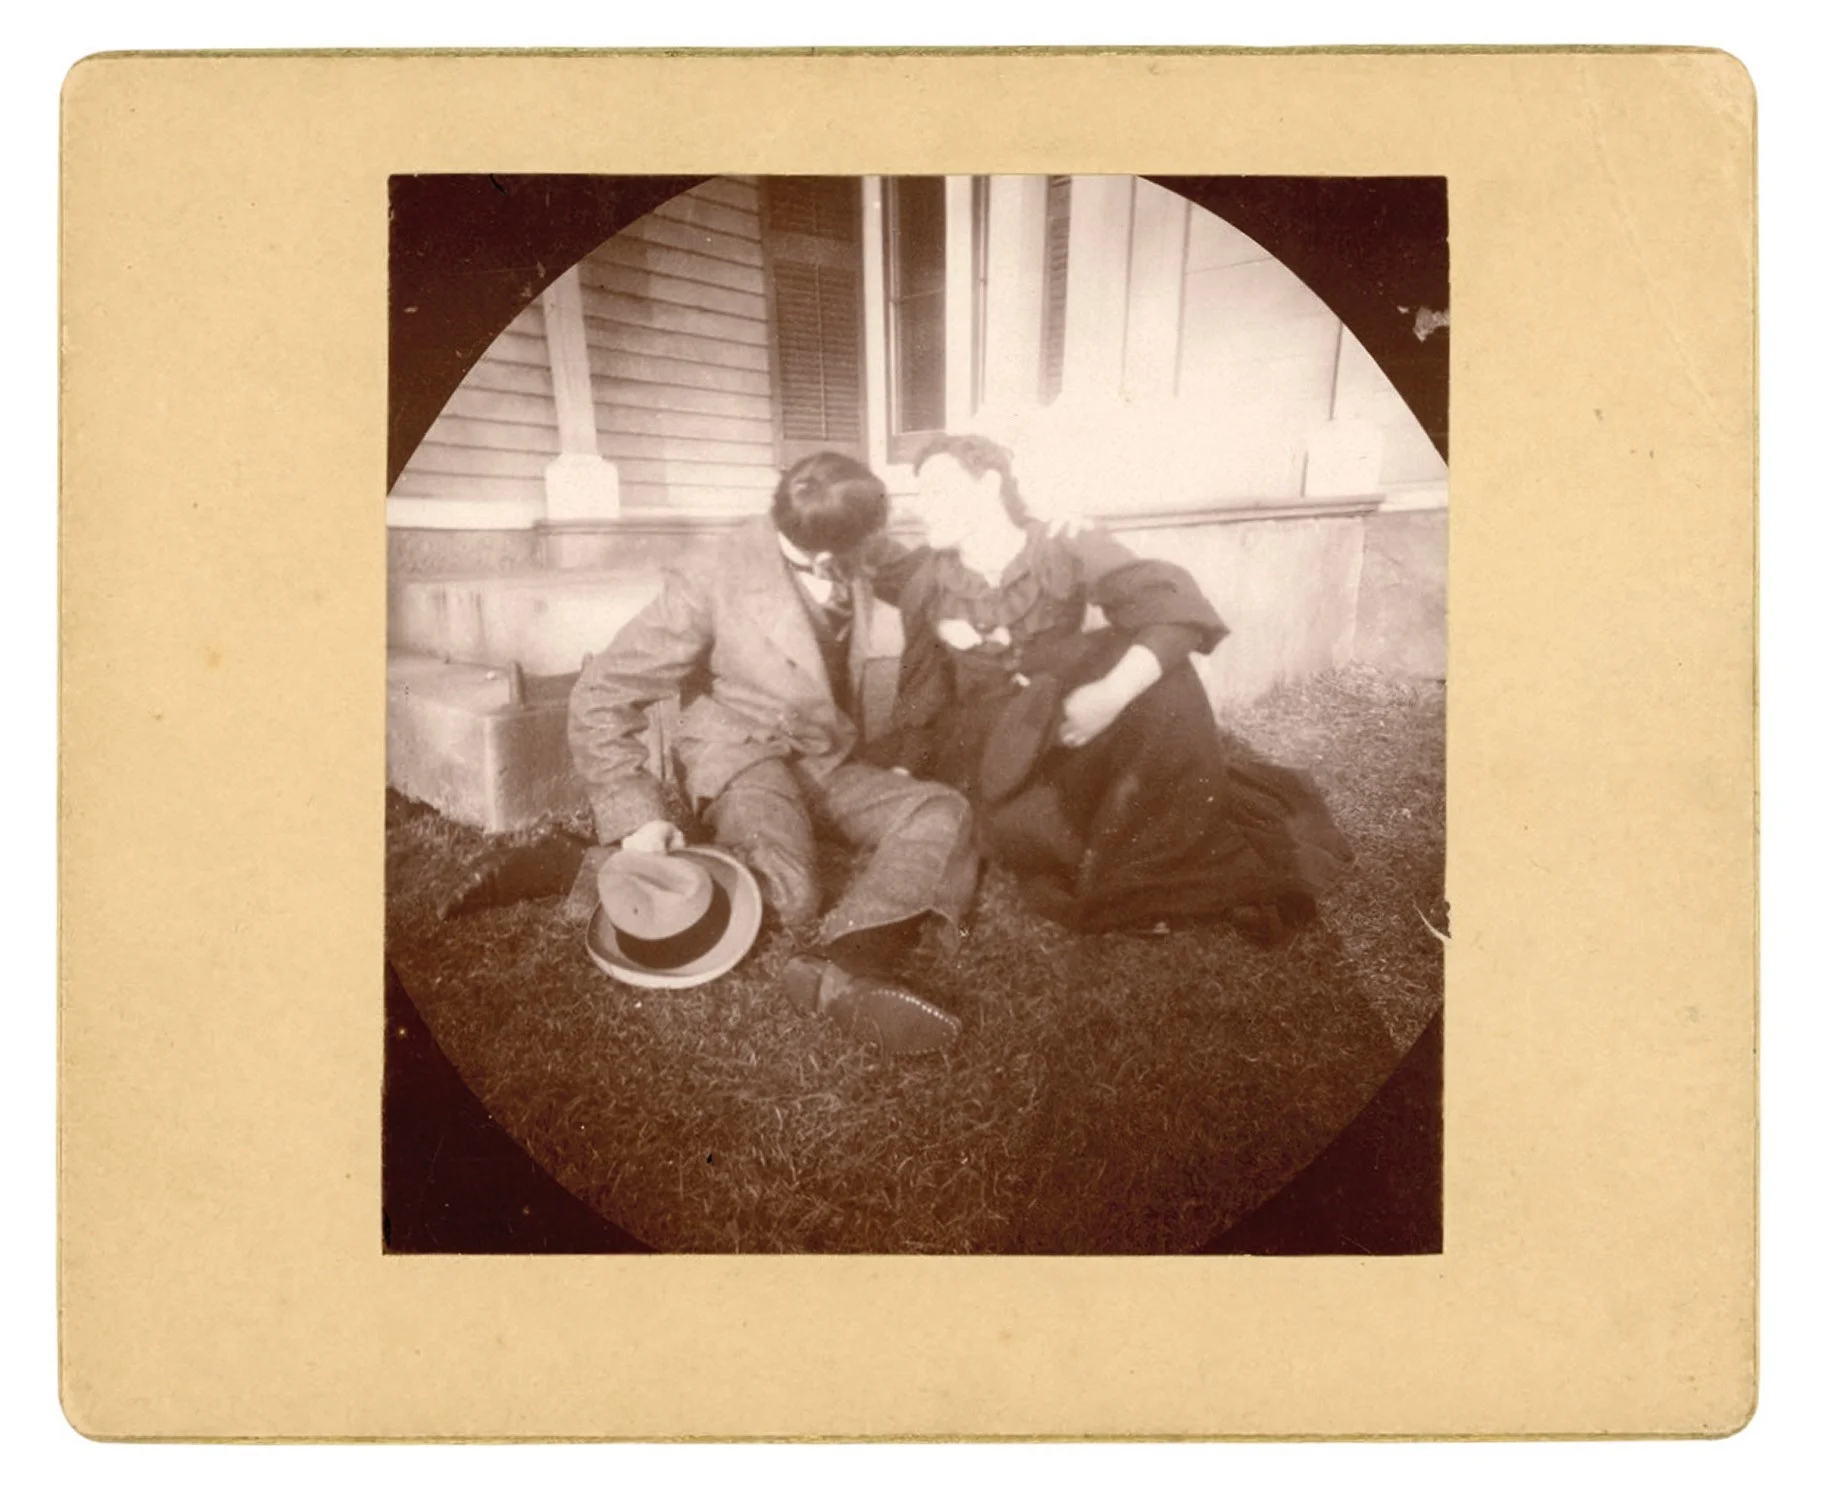 Машина часу: архівні фото про те, як цілувалися закохані 100 років тому - фото 486038